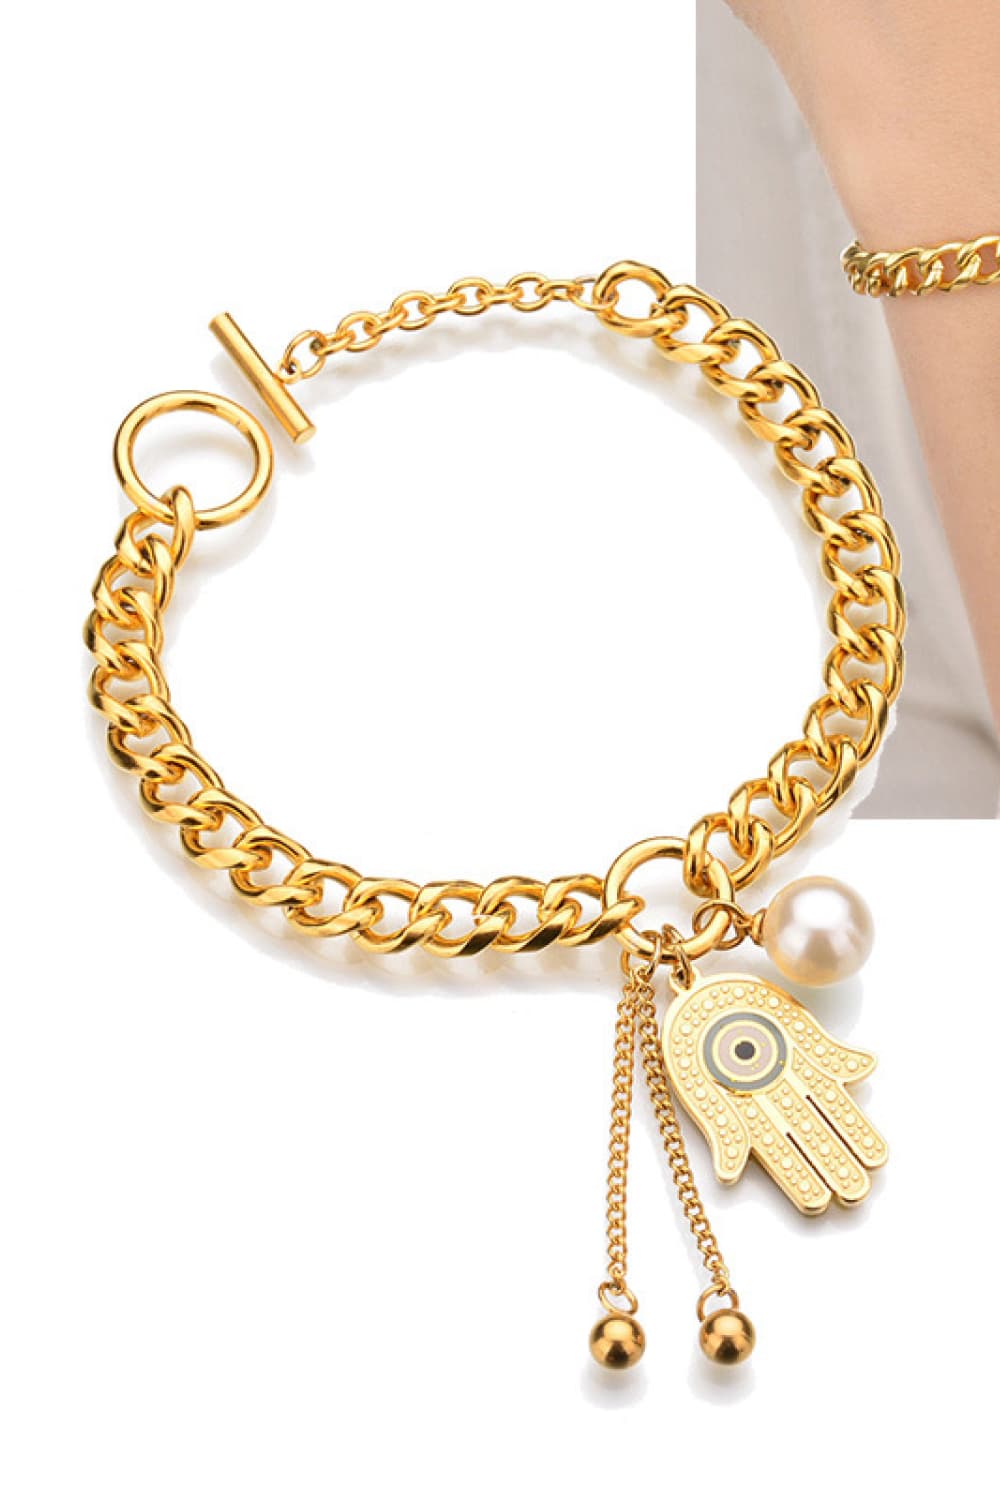 Hamsa Hand Chunky Chain Bracelet - Gold / One Size - Women’s Jewelry - Bracelets - 4 - 2024